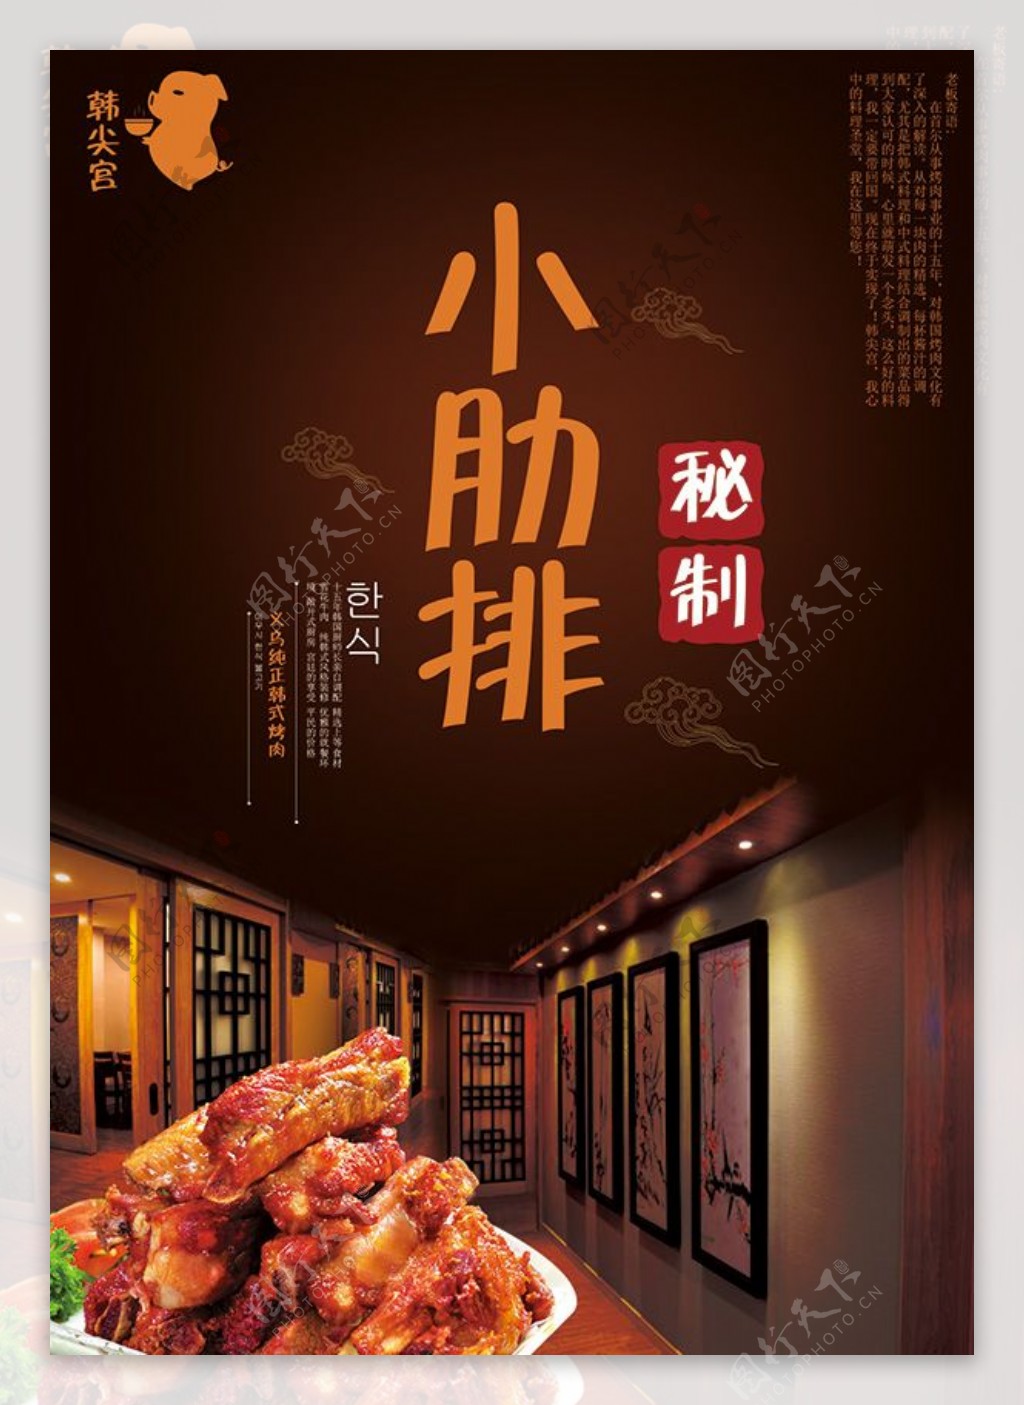 韩国美食秘制小肋排宣传海报设计psd素材下载